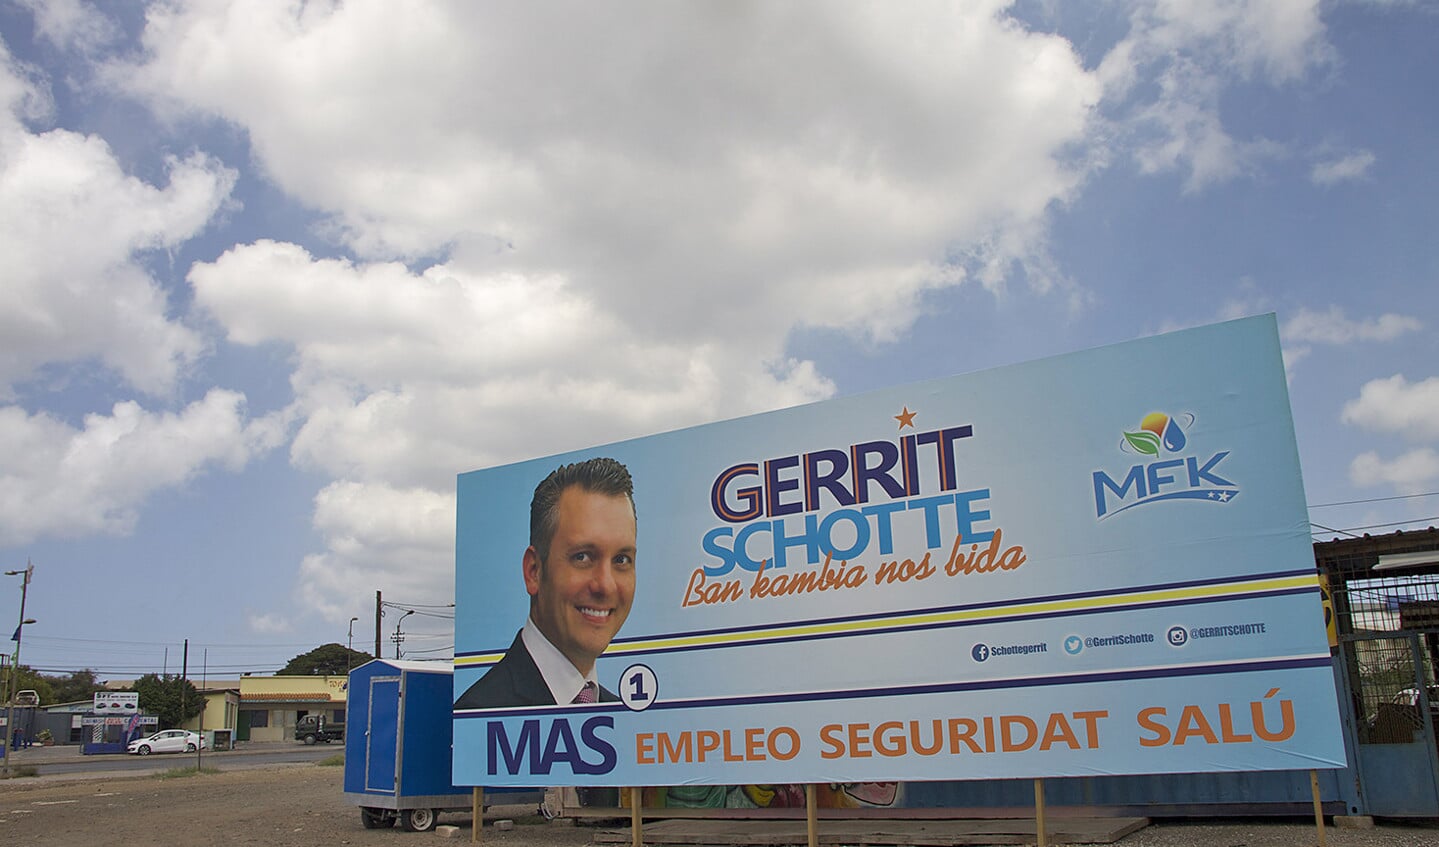 Op een verkiezingsbord staat Gerrit Schotte, die toch weer meedoet, ondanks een veroordeling door de rechter.